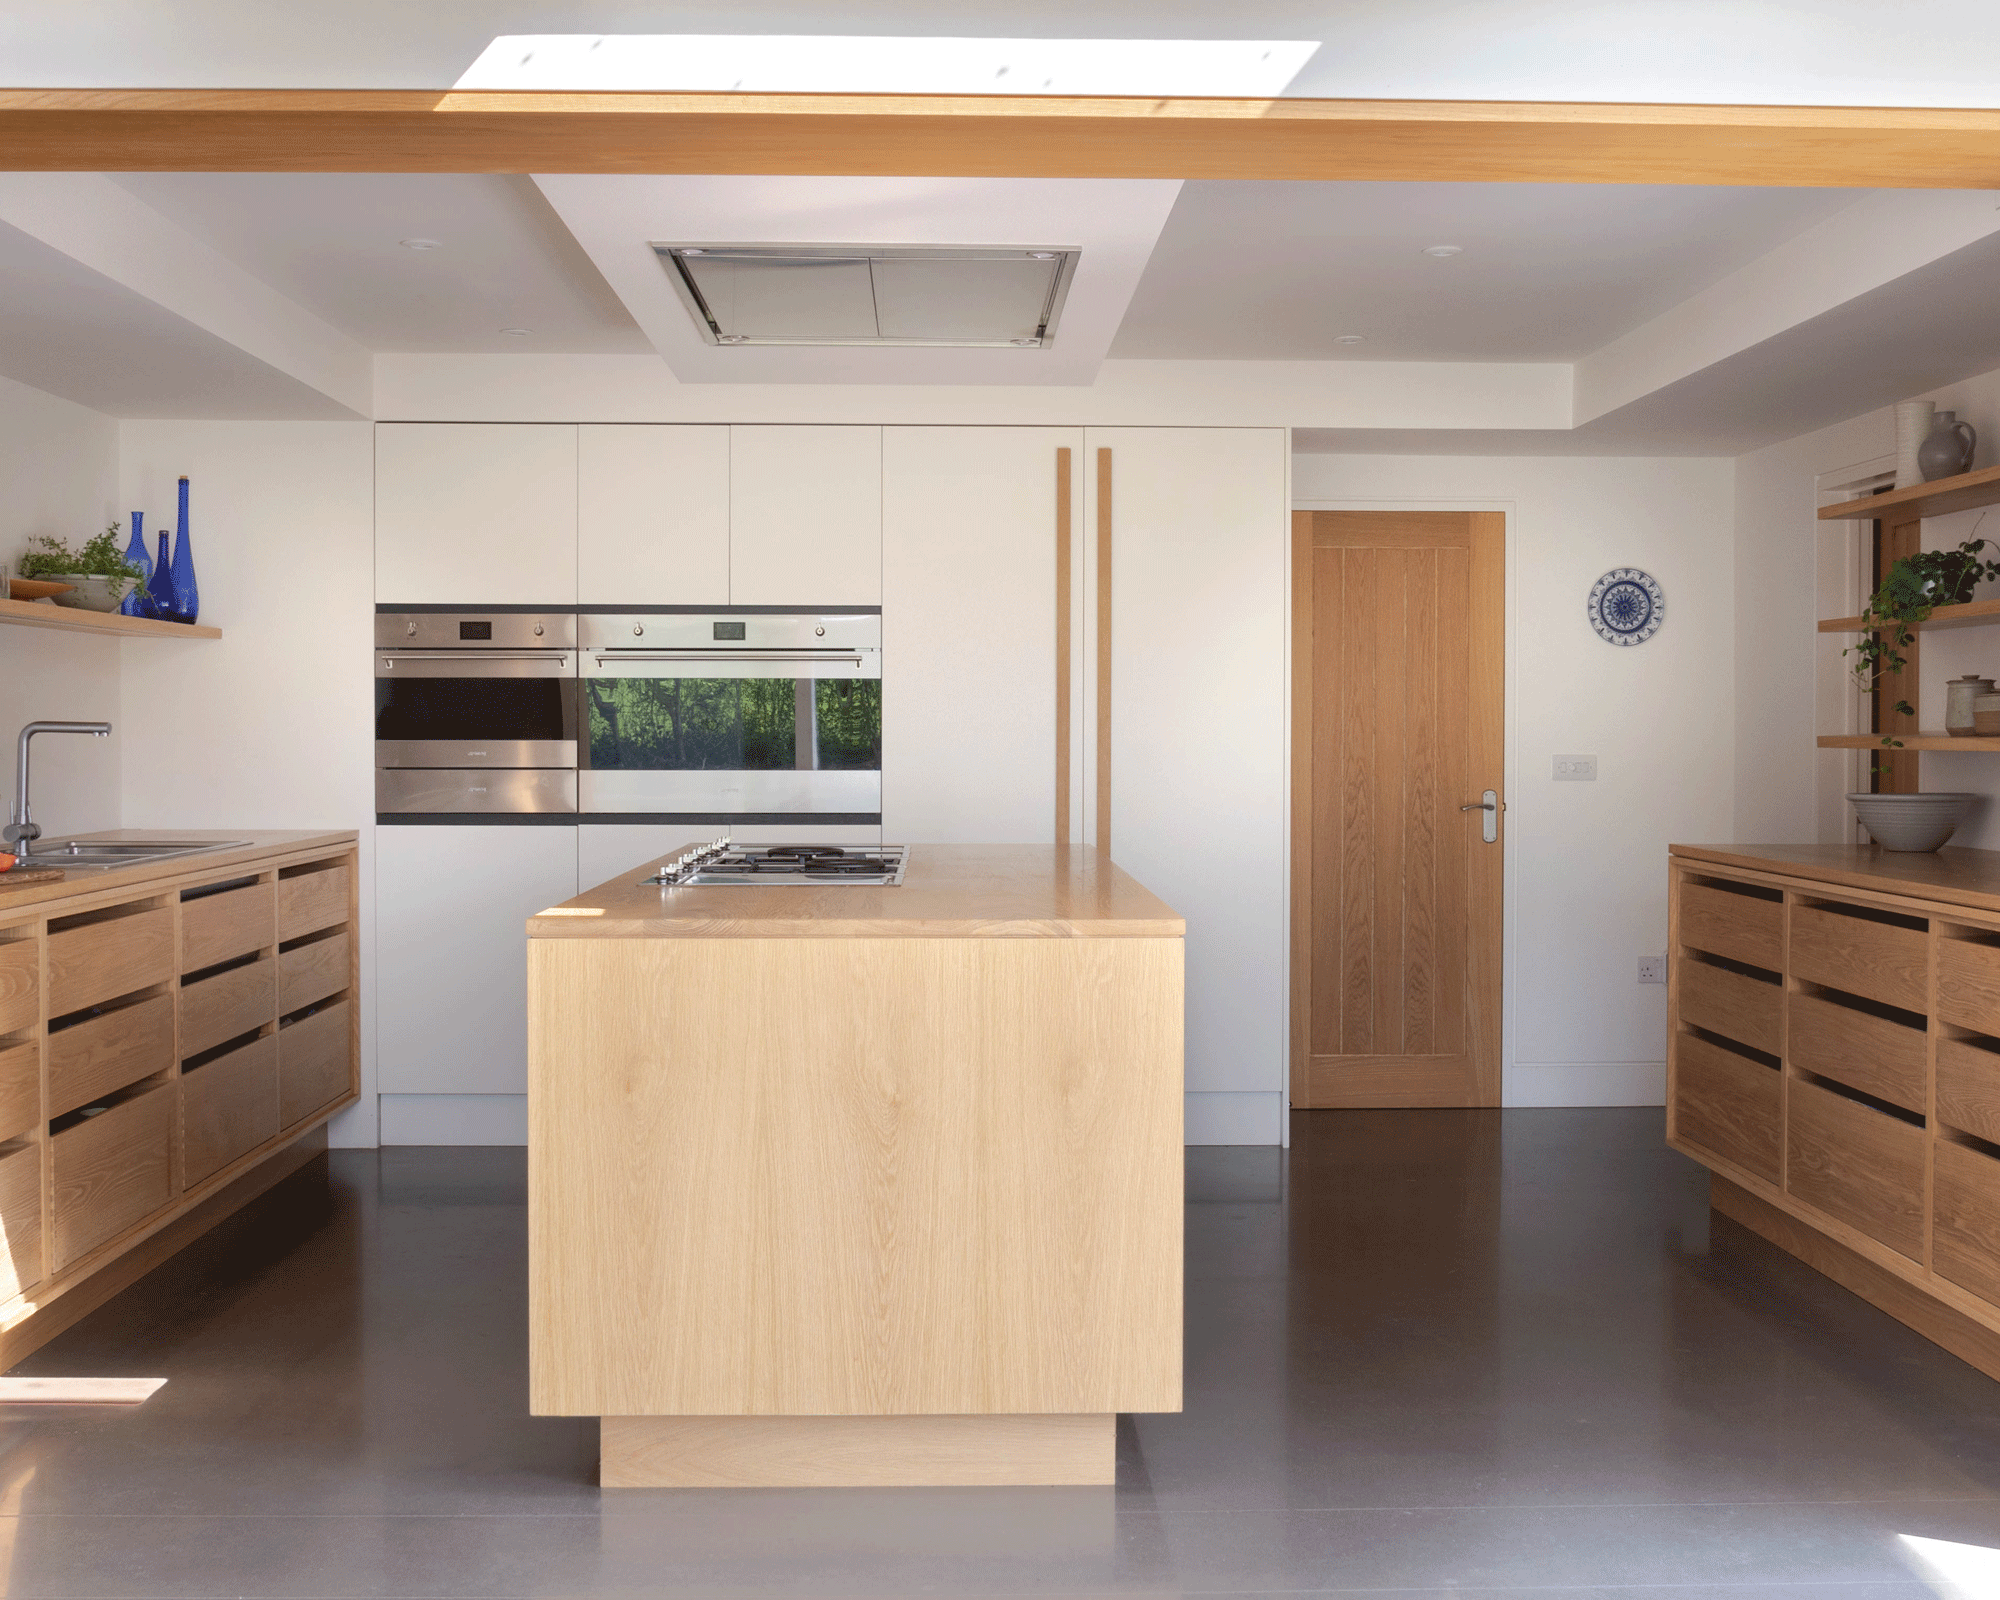 wood kitchen cabinet ideas - Modern wooden kitchen